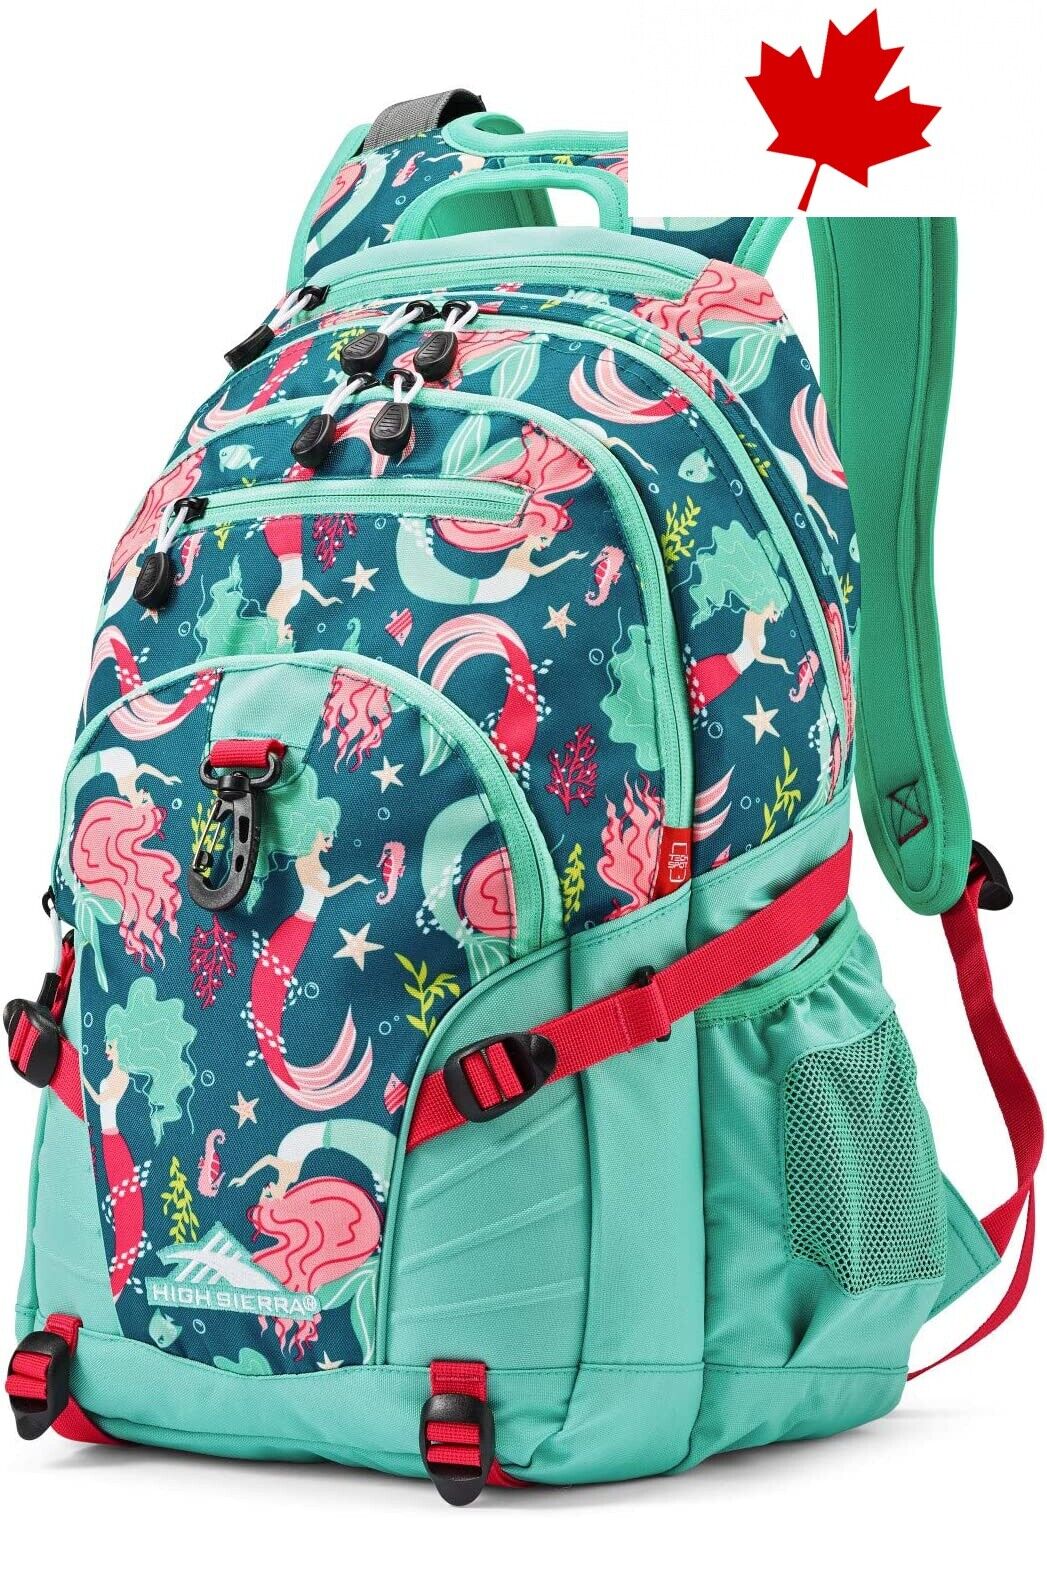 Mermaid Loop Backpack in 19 x 13.5 x 8.5-Inch Size